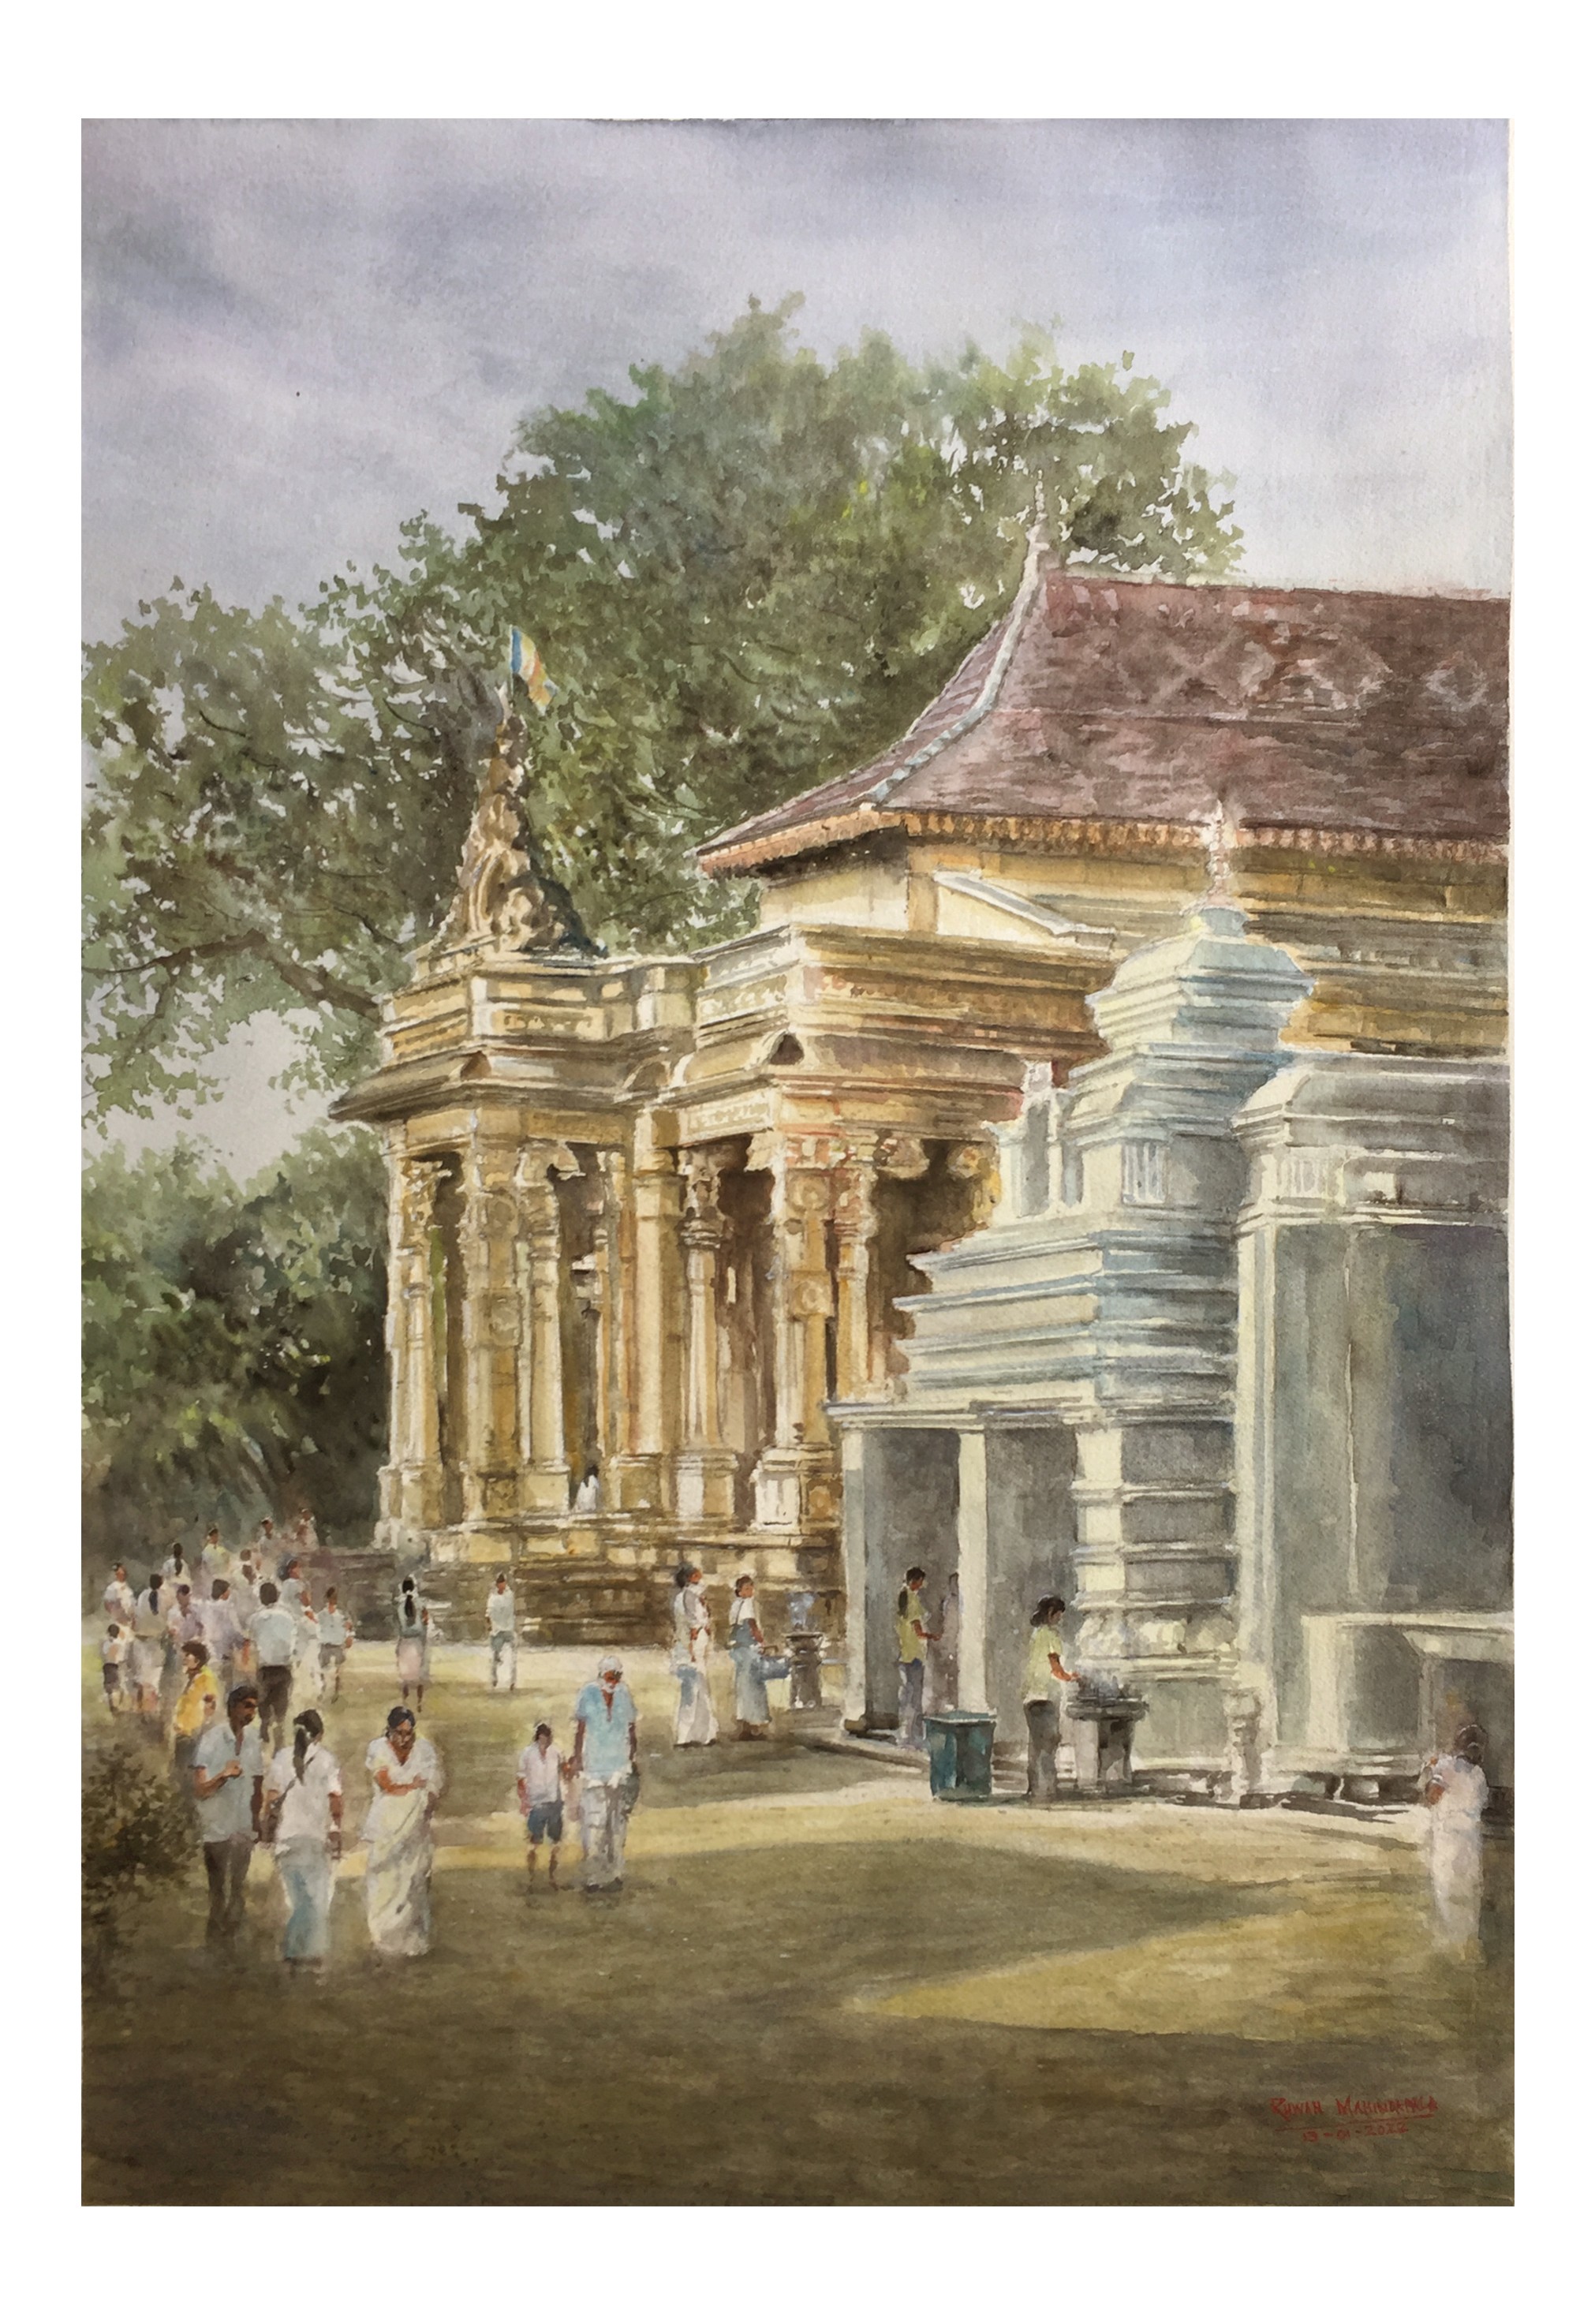 Kelaniya Raja Maha Vihara by RUWAN MAHINDAPALA